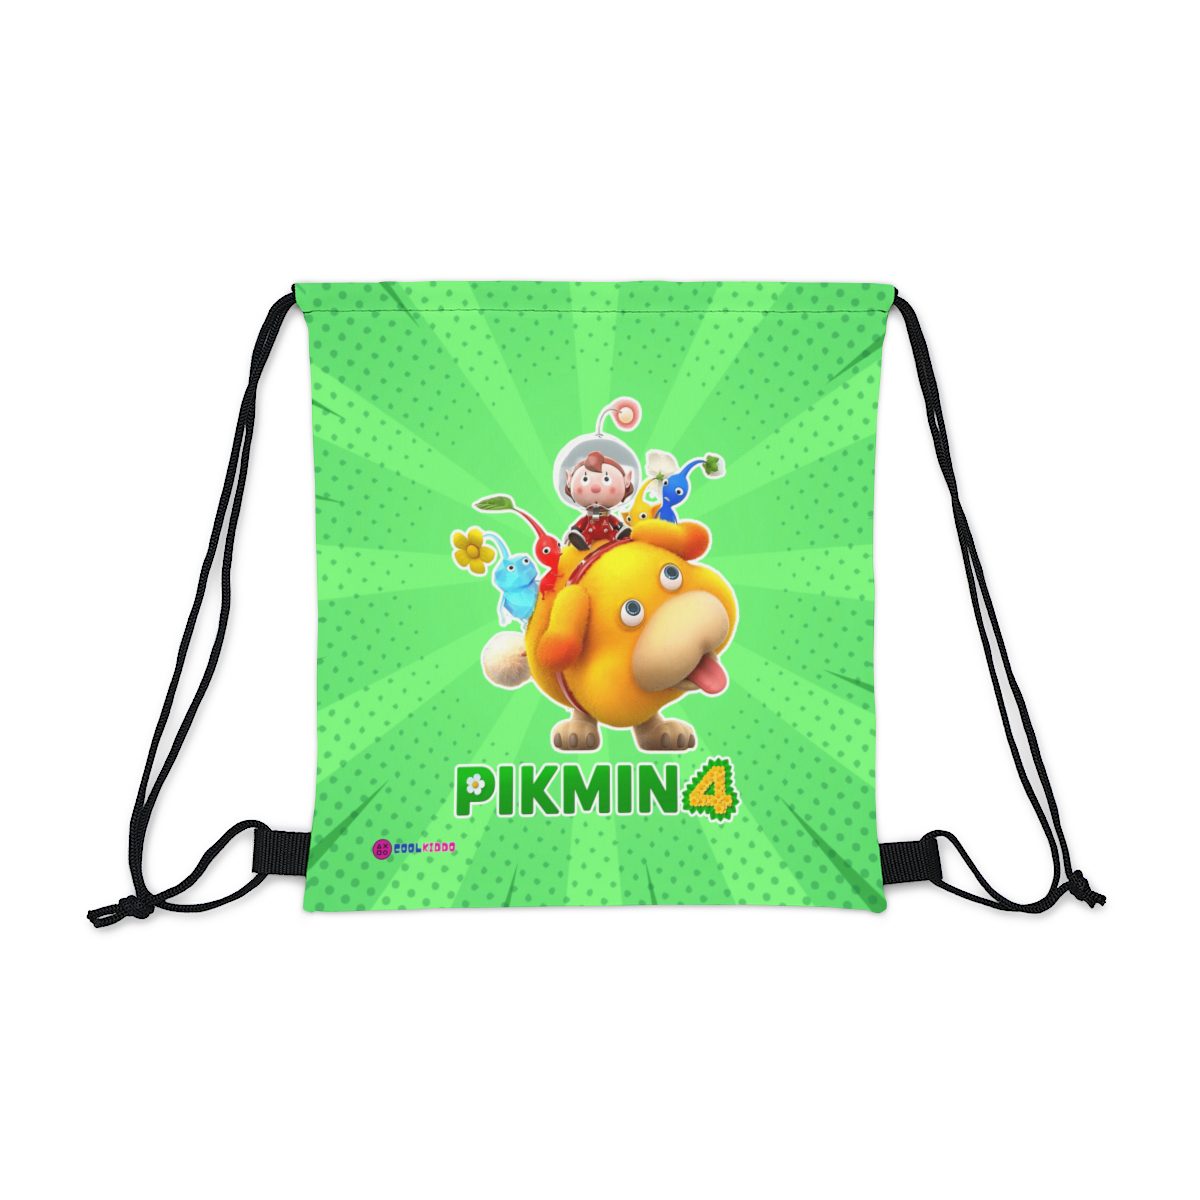 Nintendo PIKMIN 4 Video Game Outdoor Drawstring Bag Cool Kiddo